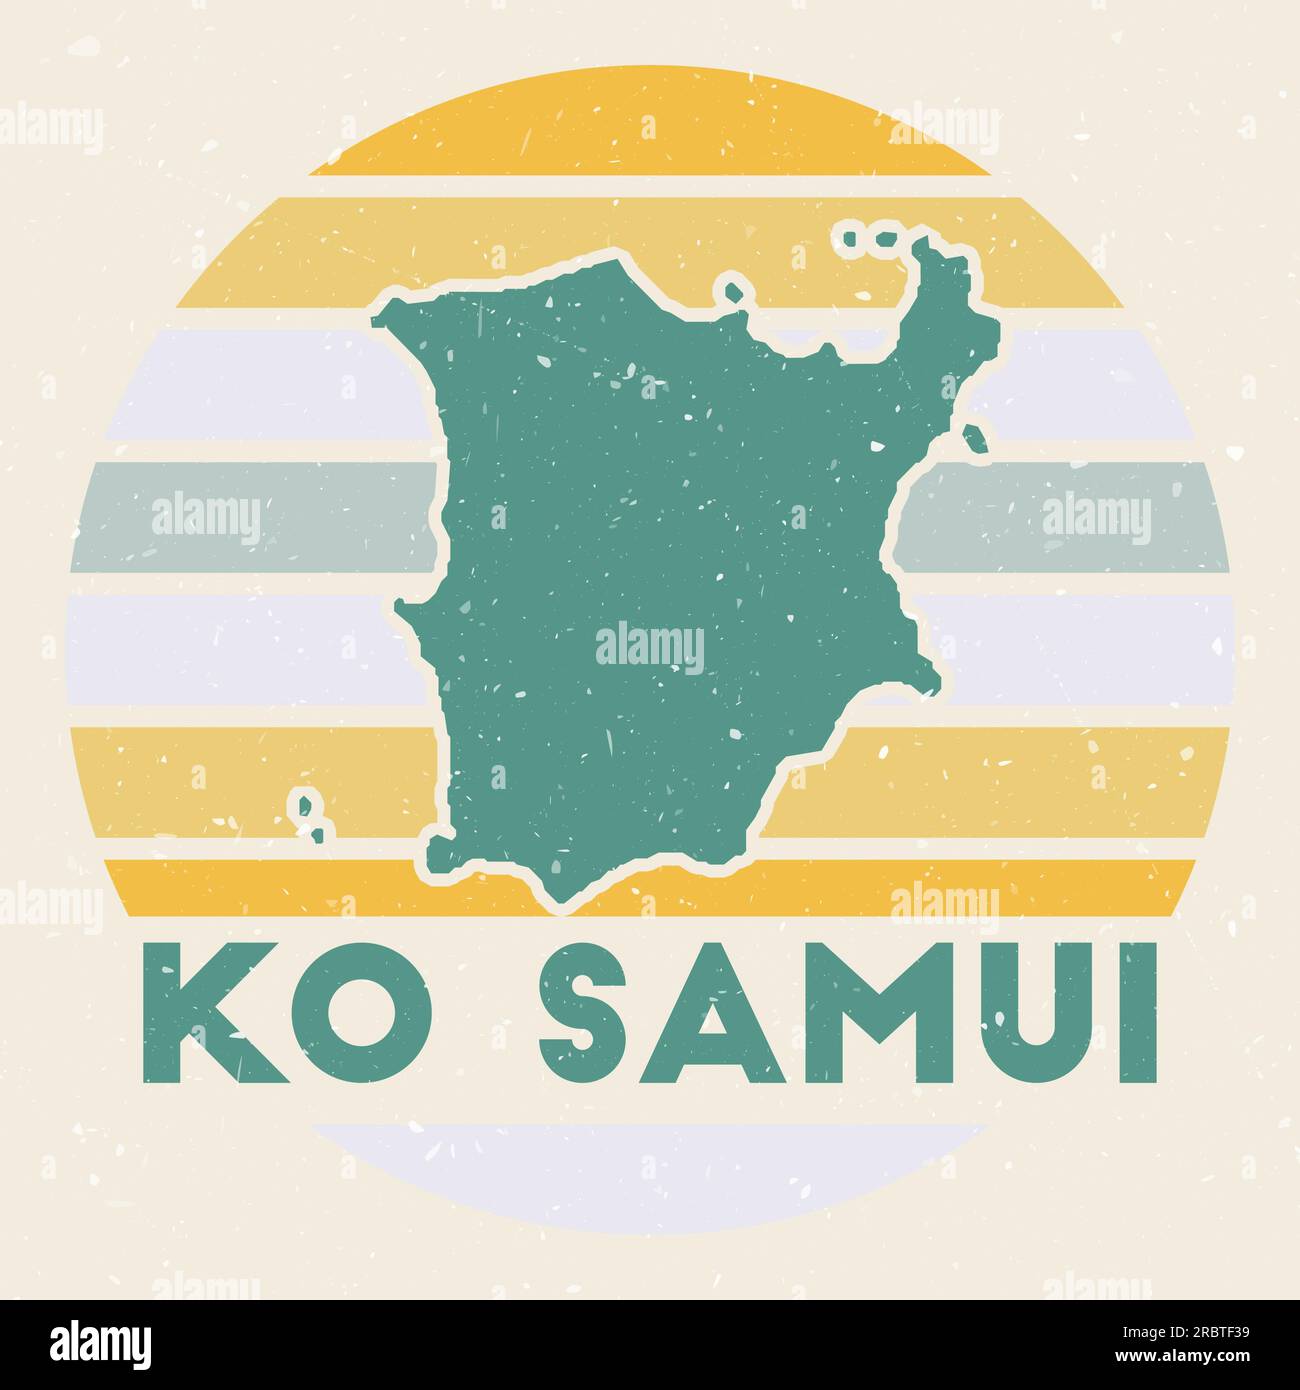 Logo von Ko Samui. Unterschreiben Sie mit der Karte der Insel und den farbigen Streifen, Vektordarstellung. Kann als Abzeichen, Logo, Label, Aufkleber oder Abzeichen des verwendet werden Stock Vektor